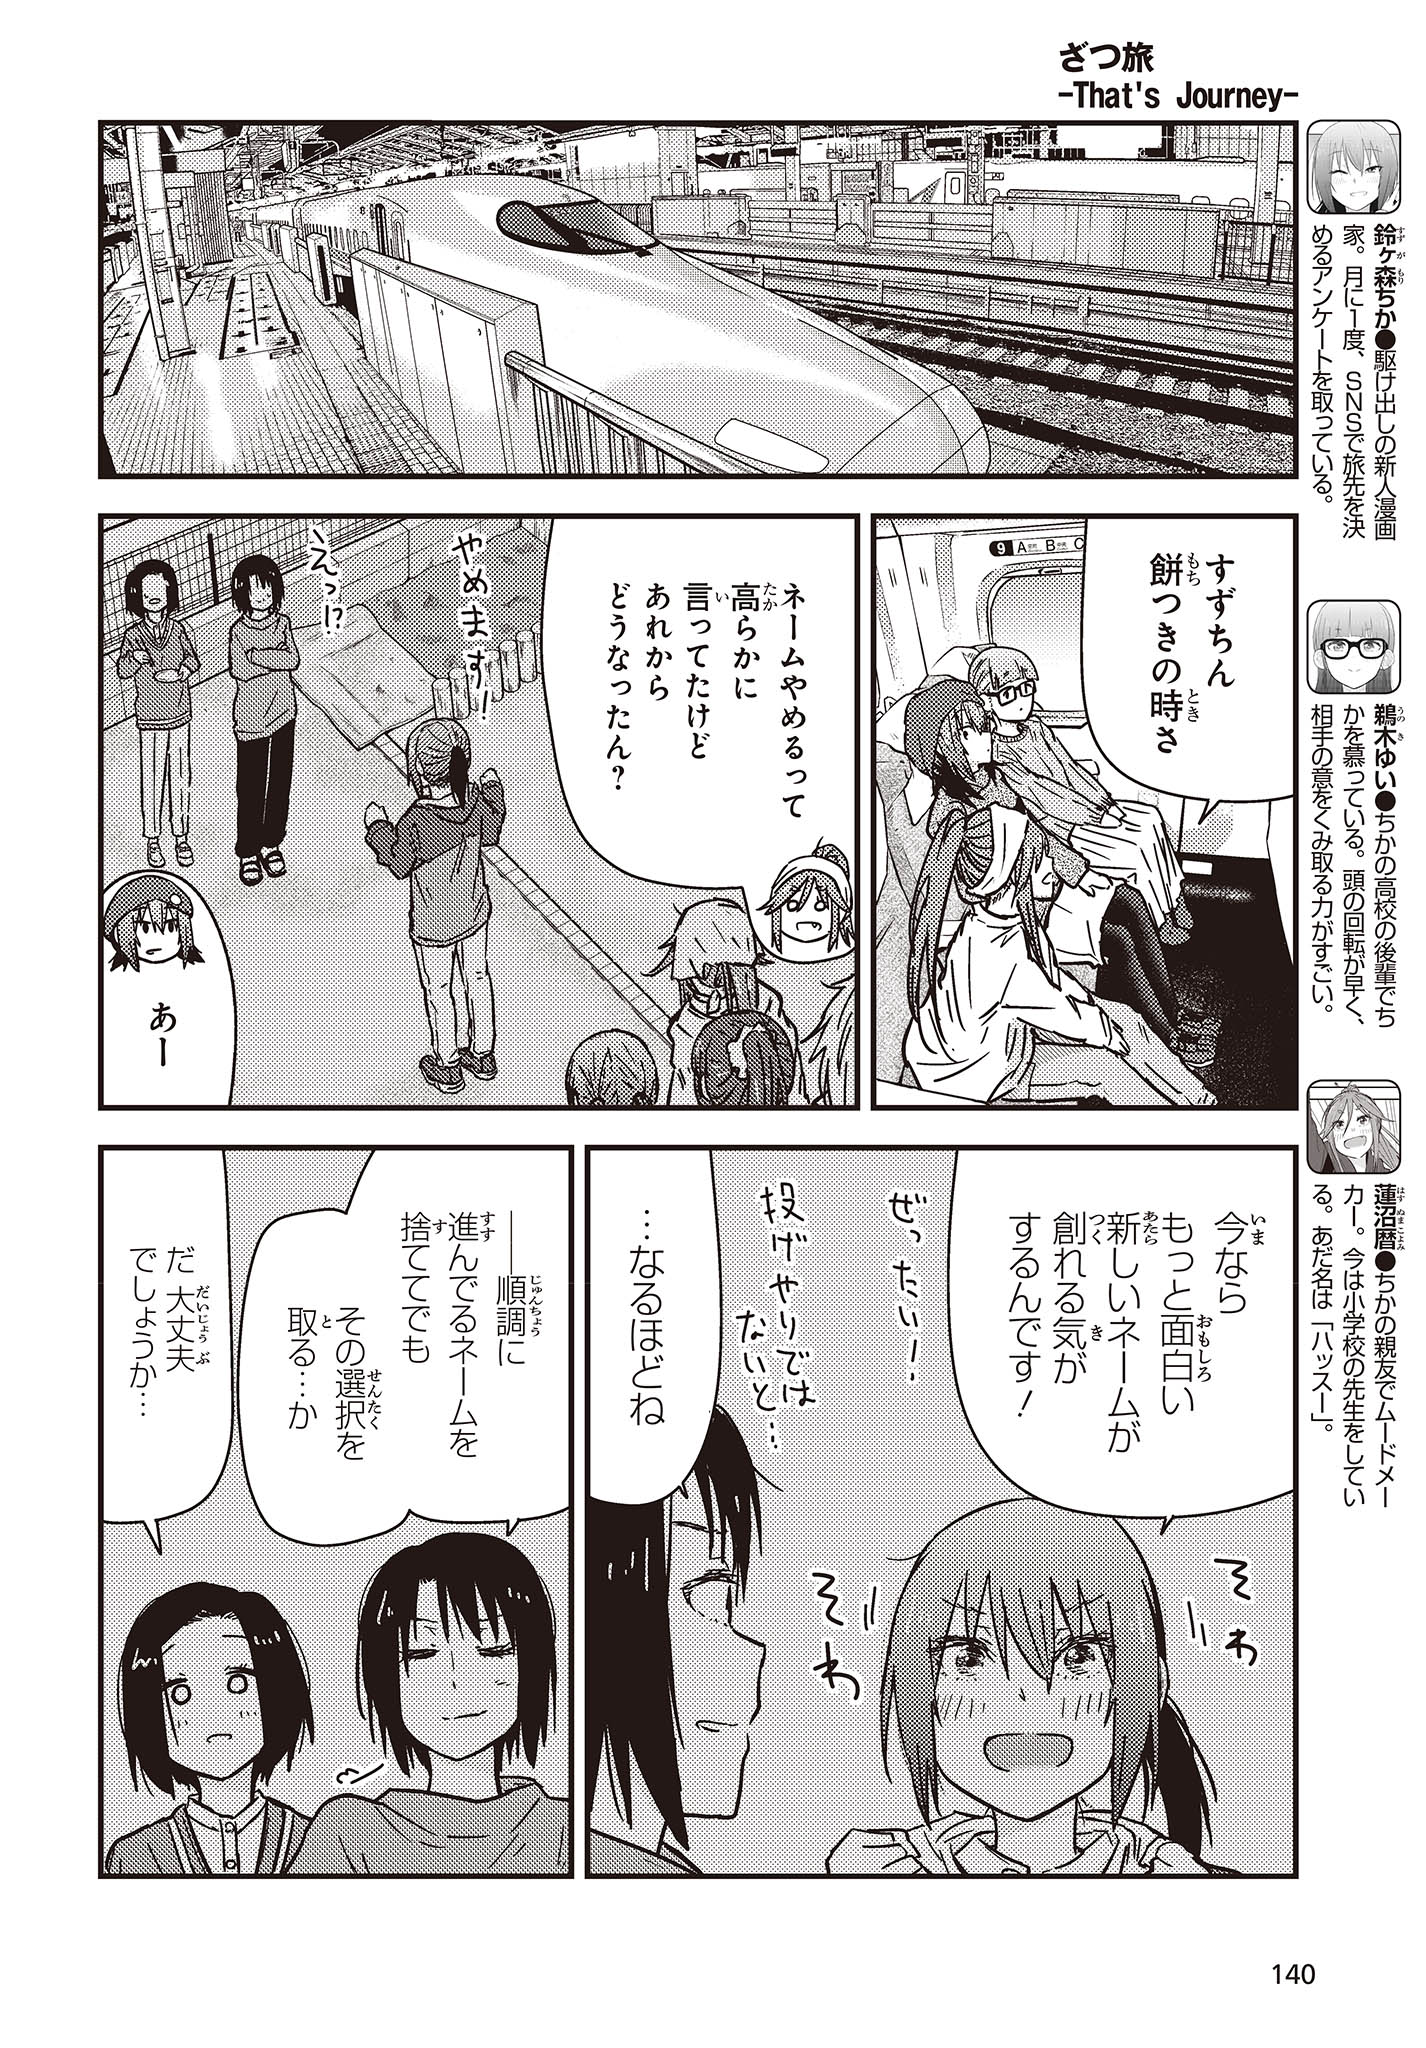 ざつ旅-That’s Journey- 第30話 - Page 4